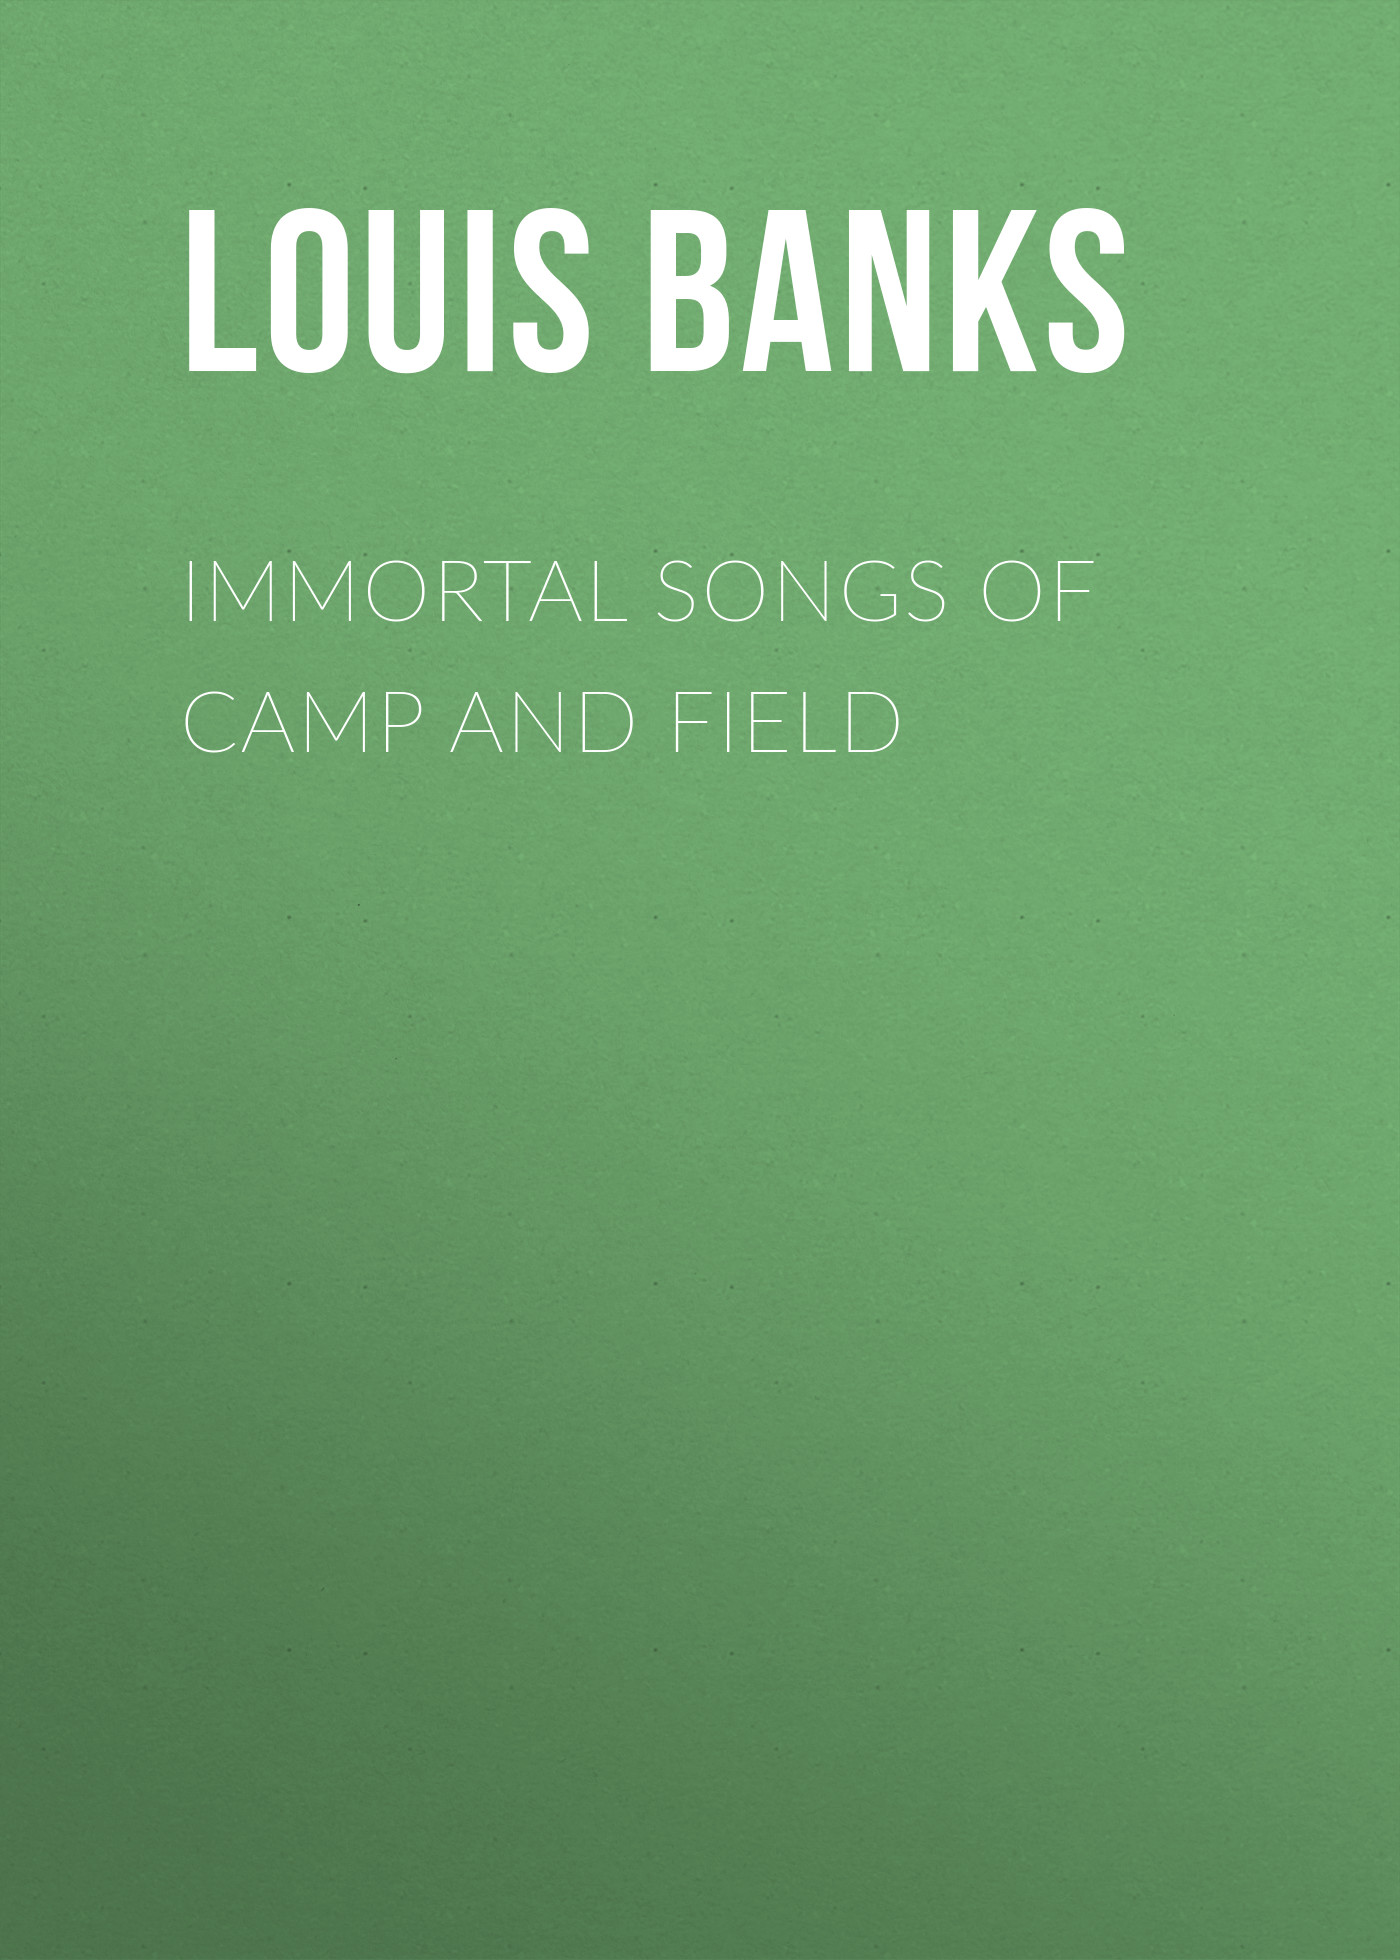 Книга Immortal Songs of Camp and Field из серии , созданная Louis Banks, может относится к жанру Зарубежная старинная литература, Зарубежная классика. Стоимость электронной книги Immortal Songs of Camp and Field с идентификатором 24177052 составляет 0.90 руб.